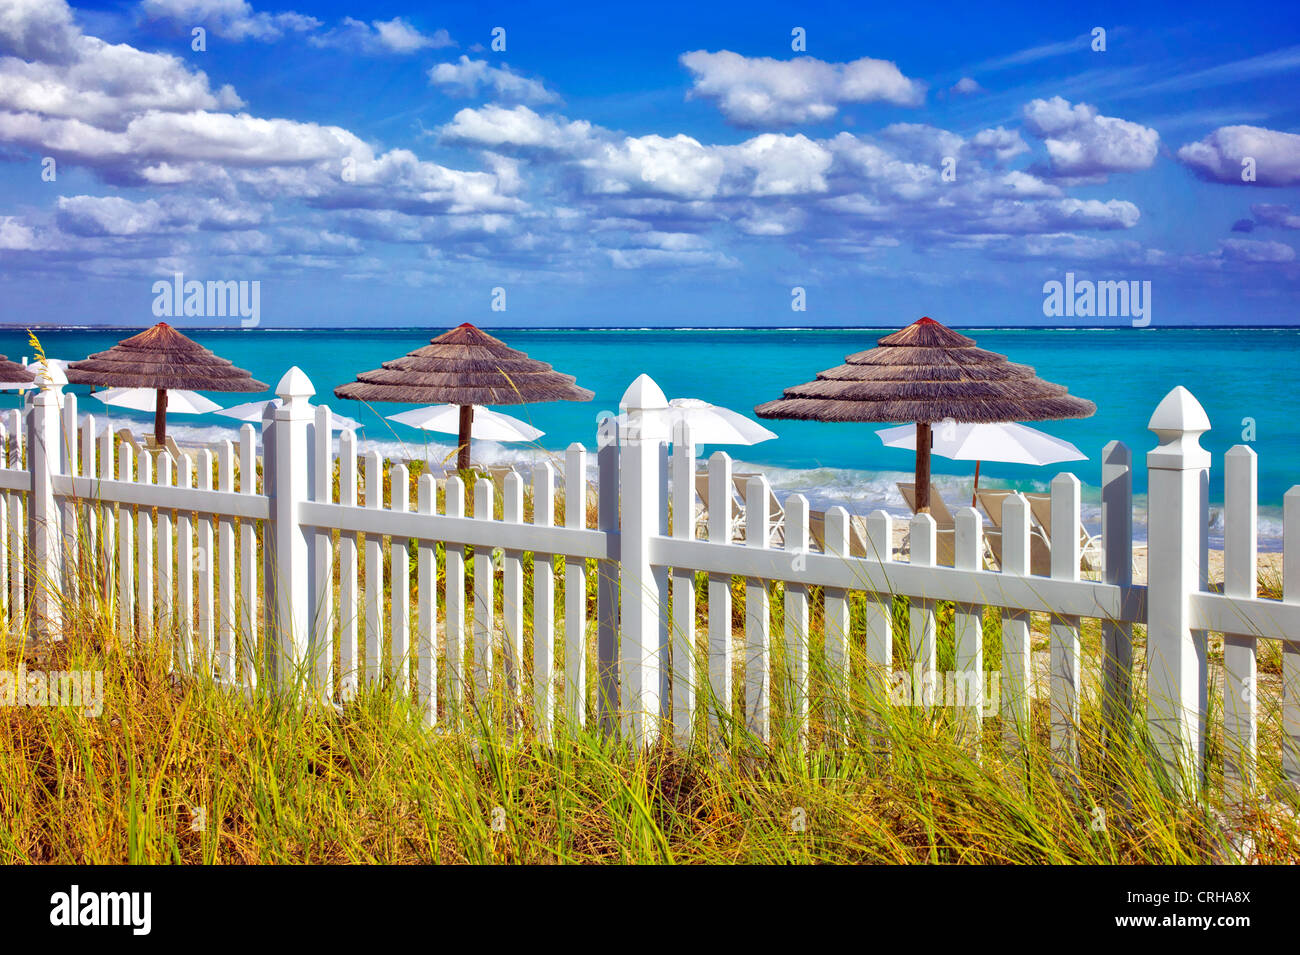 Valla blanca y sombrillas de playa. Grace Bay. Providenciales. Las Islas Turcas y Caicos Foto de stock